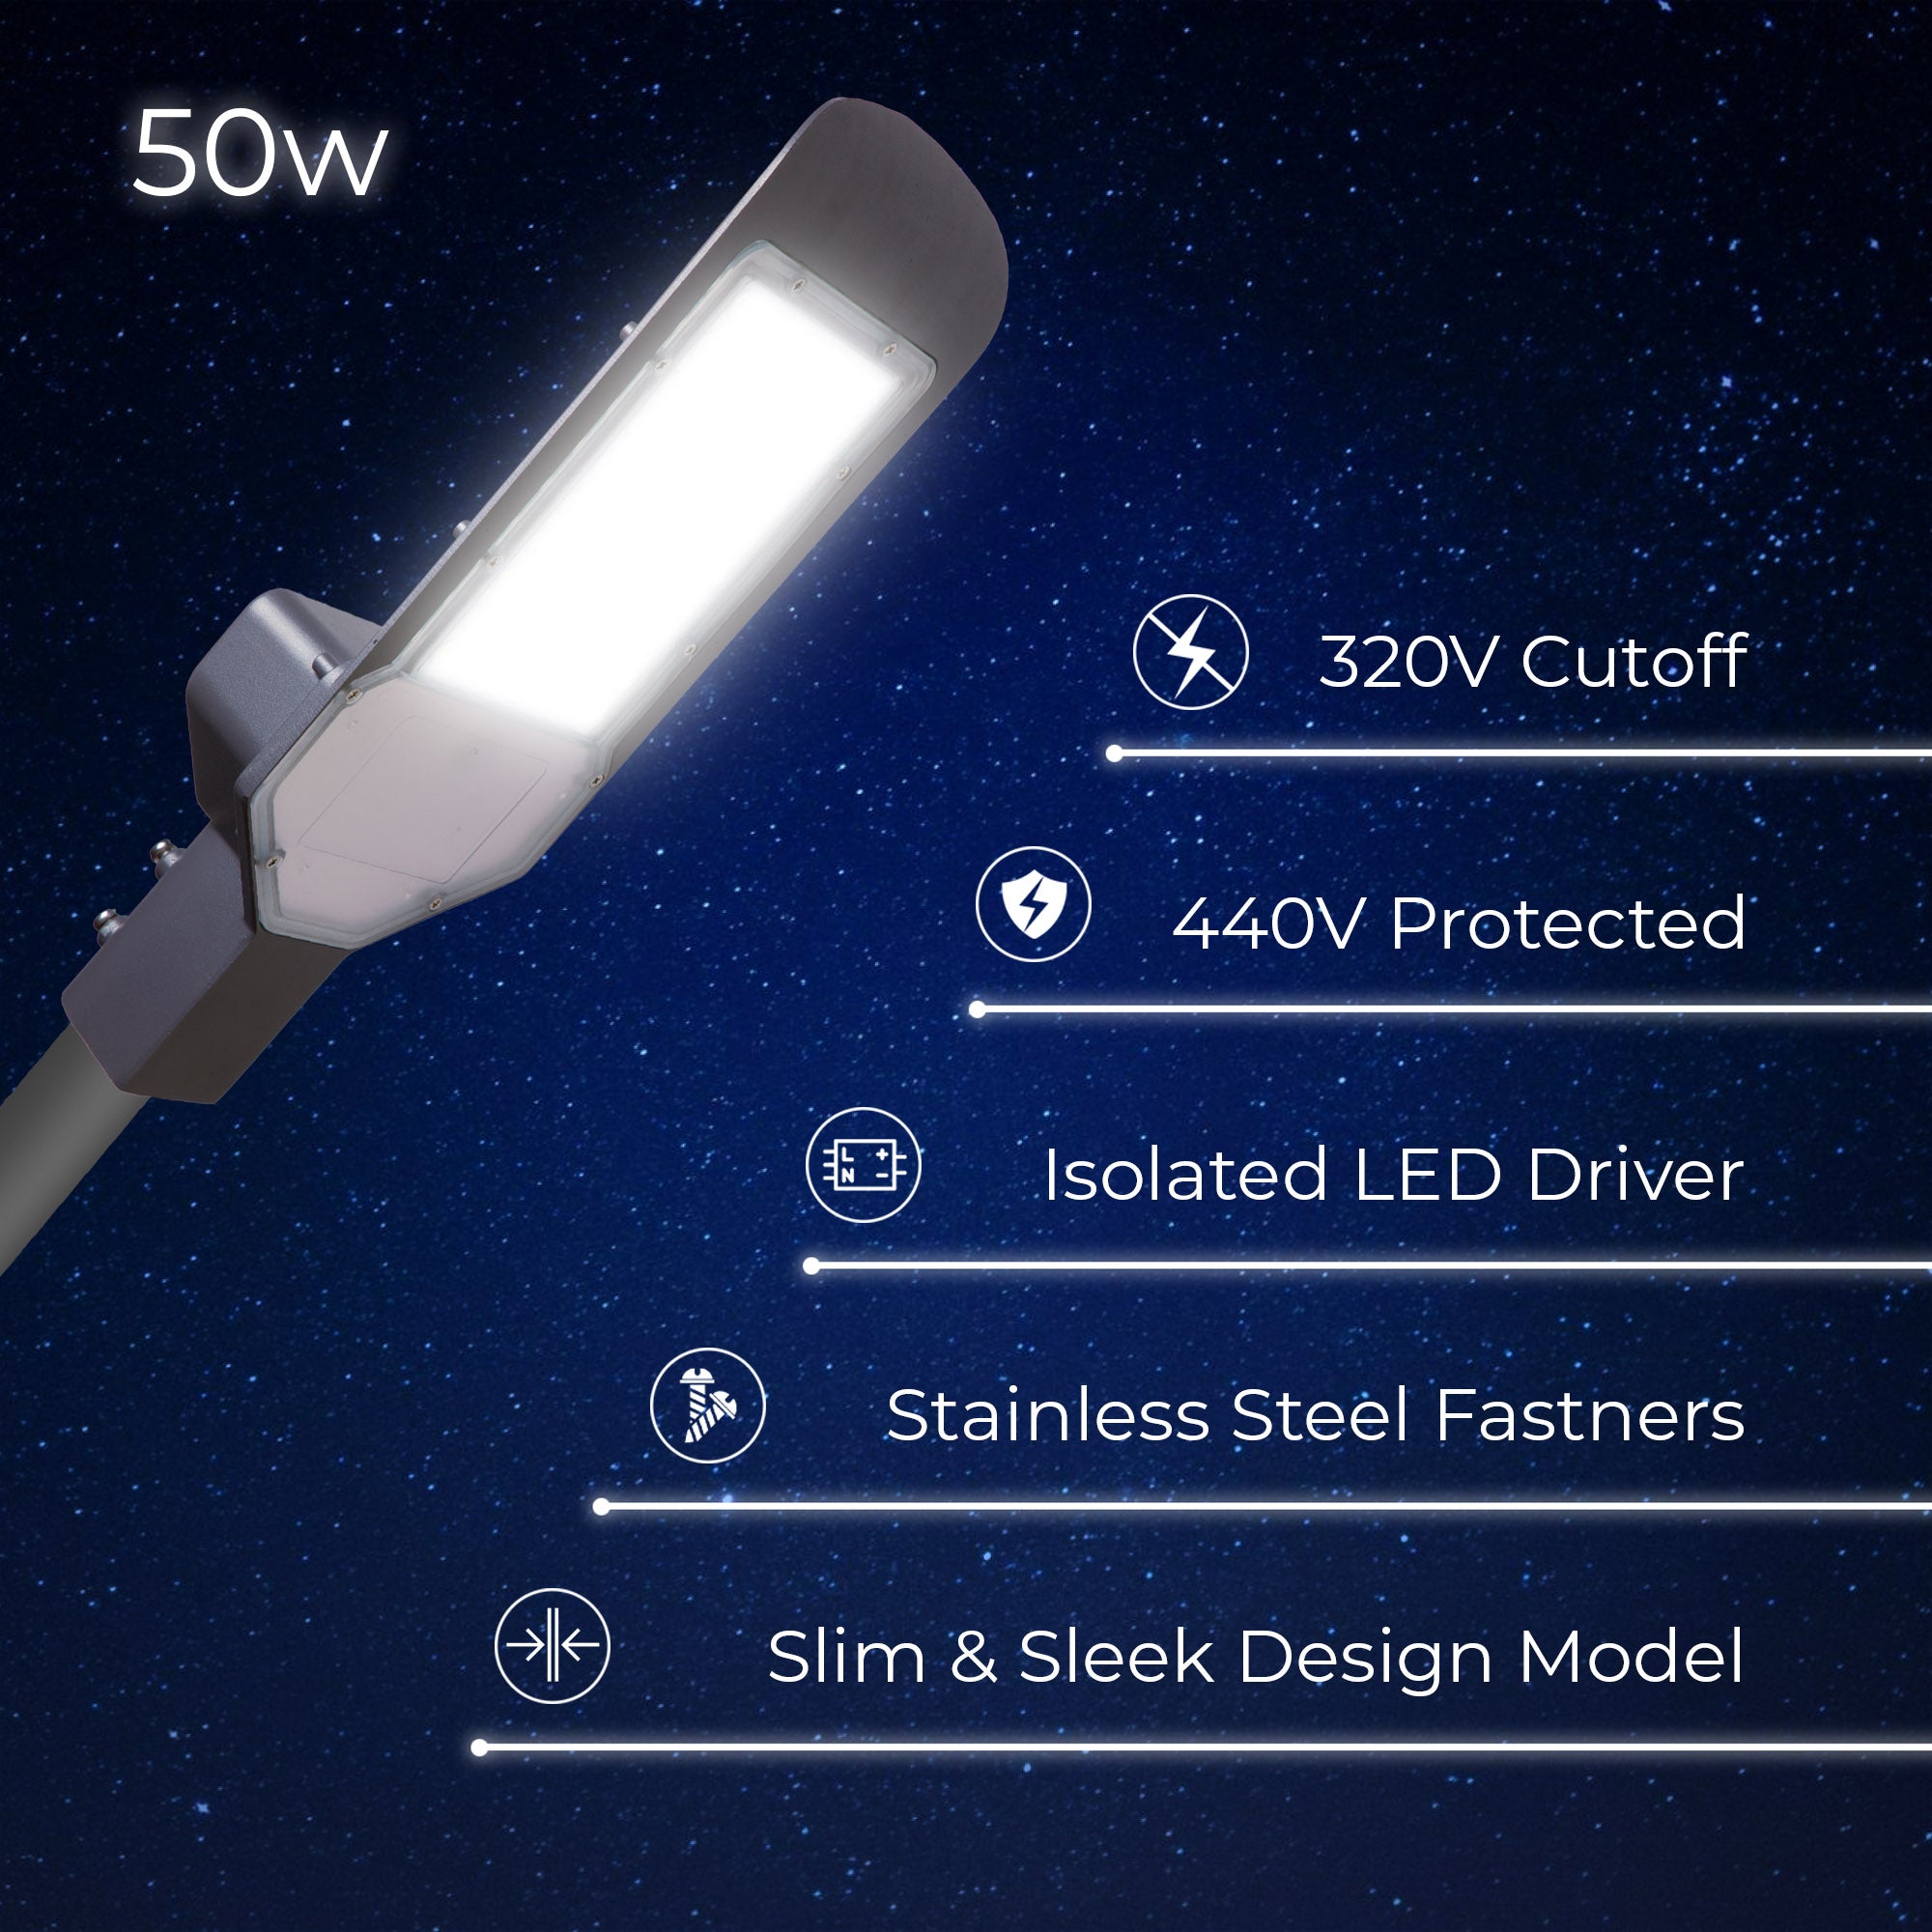 Specifications of Lexa 50W led street light #watts_50w